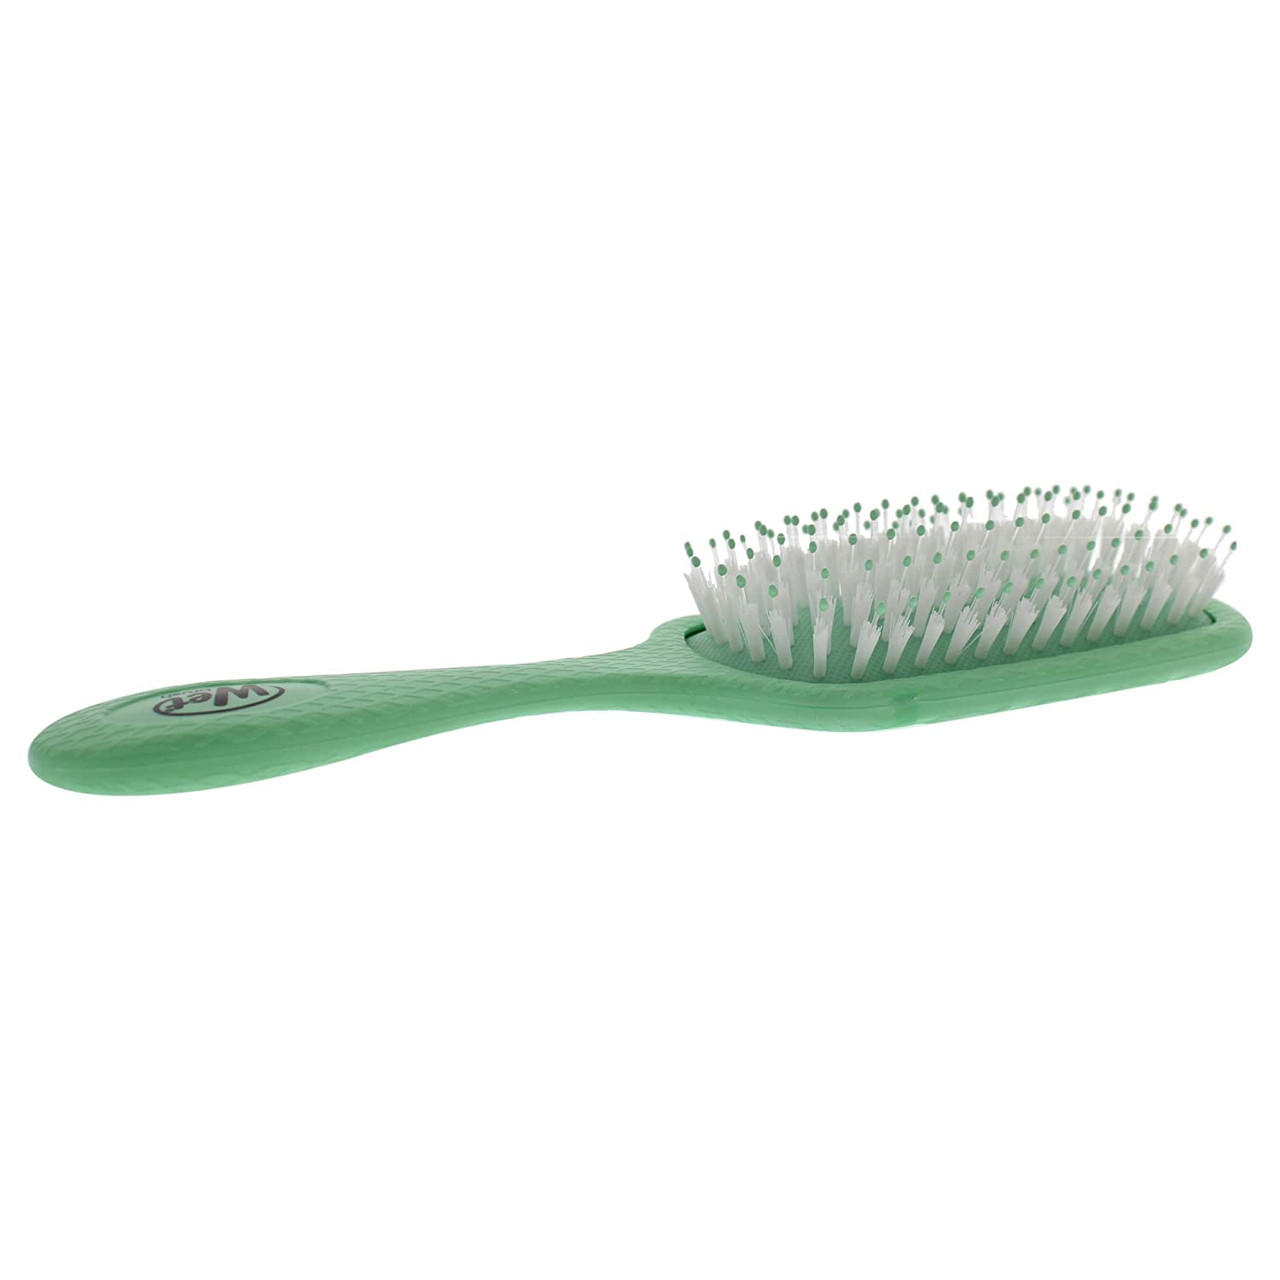 Wet Brush Go Green Charcoal Oil Infused Detangling Hair Brush